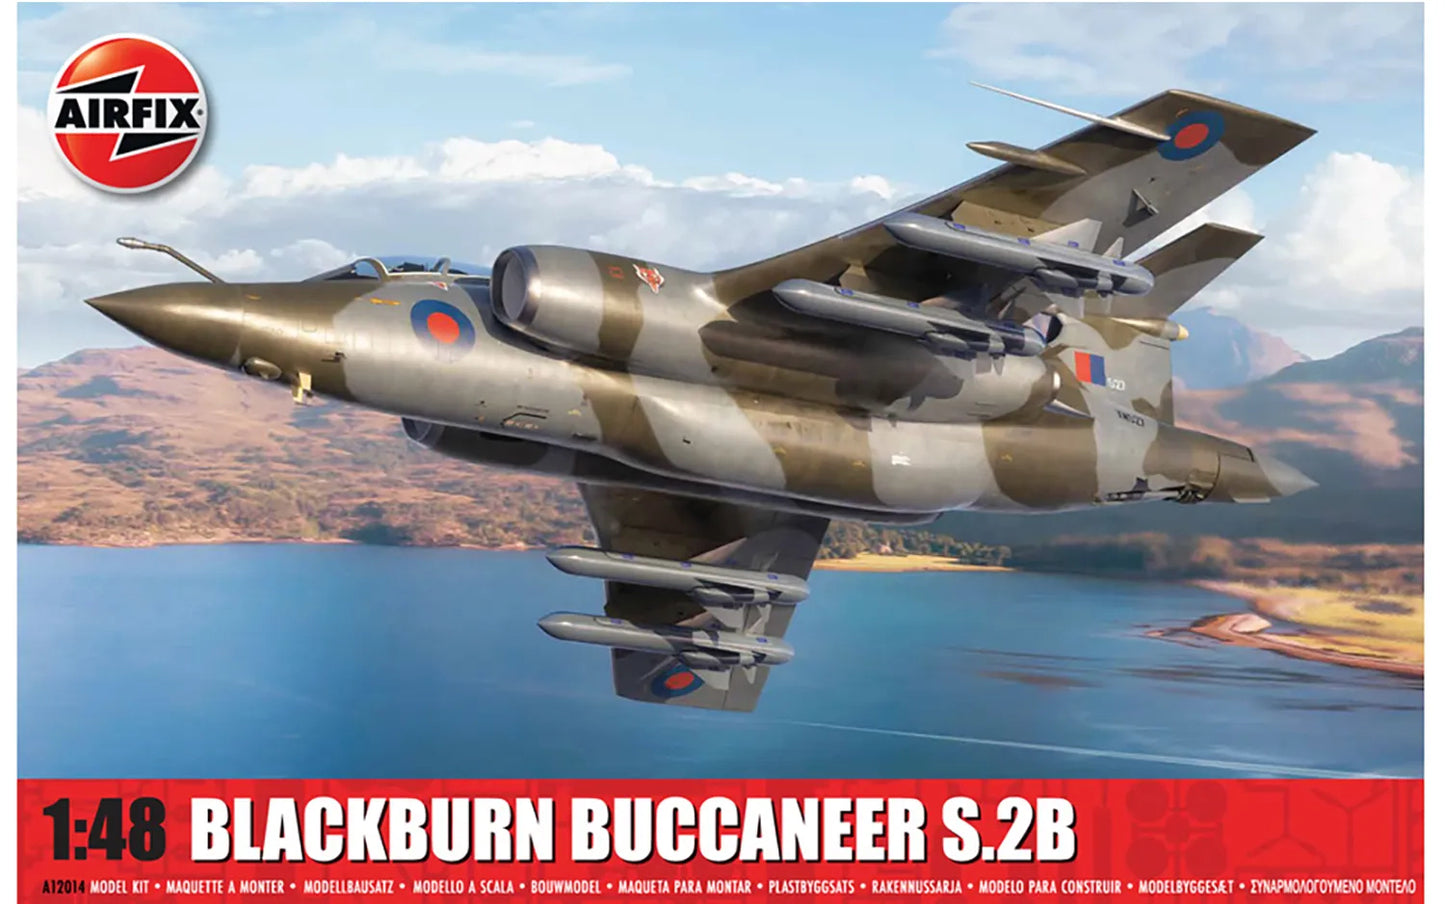 A12014 1:48 Blackburn Buccaneer S.2B